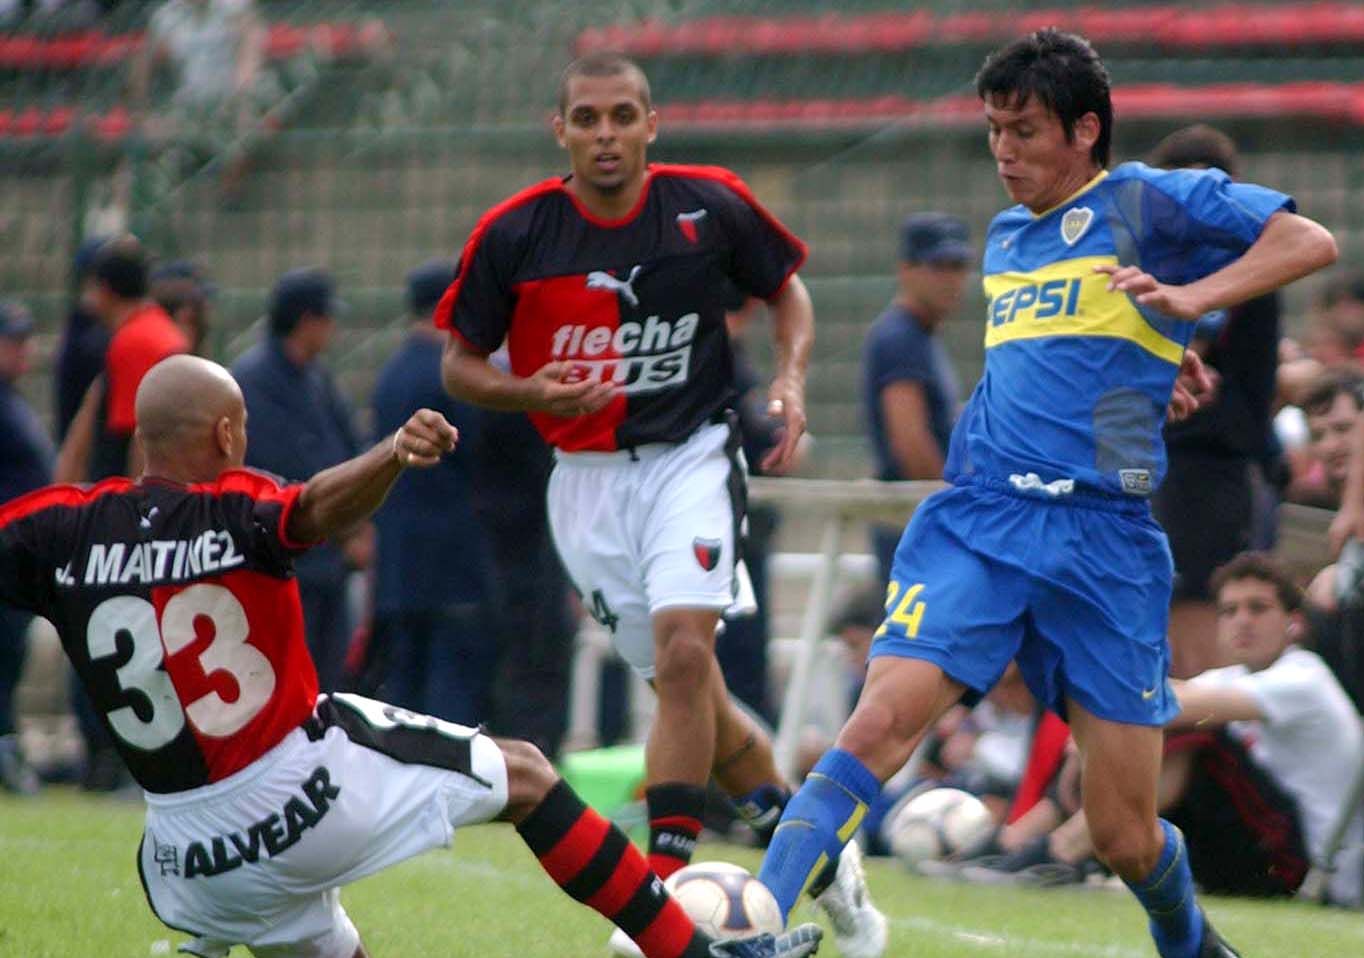 Caneo debutó en Boca, donde ganó títulos importantes como la Copa Libertadores. 